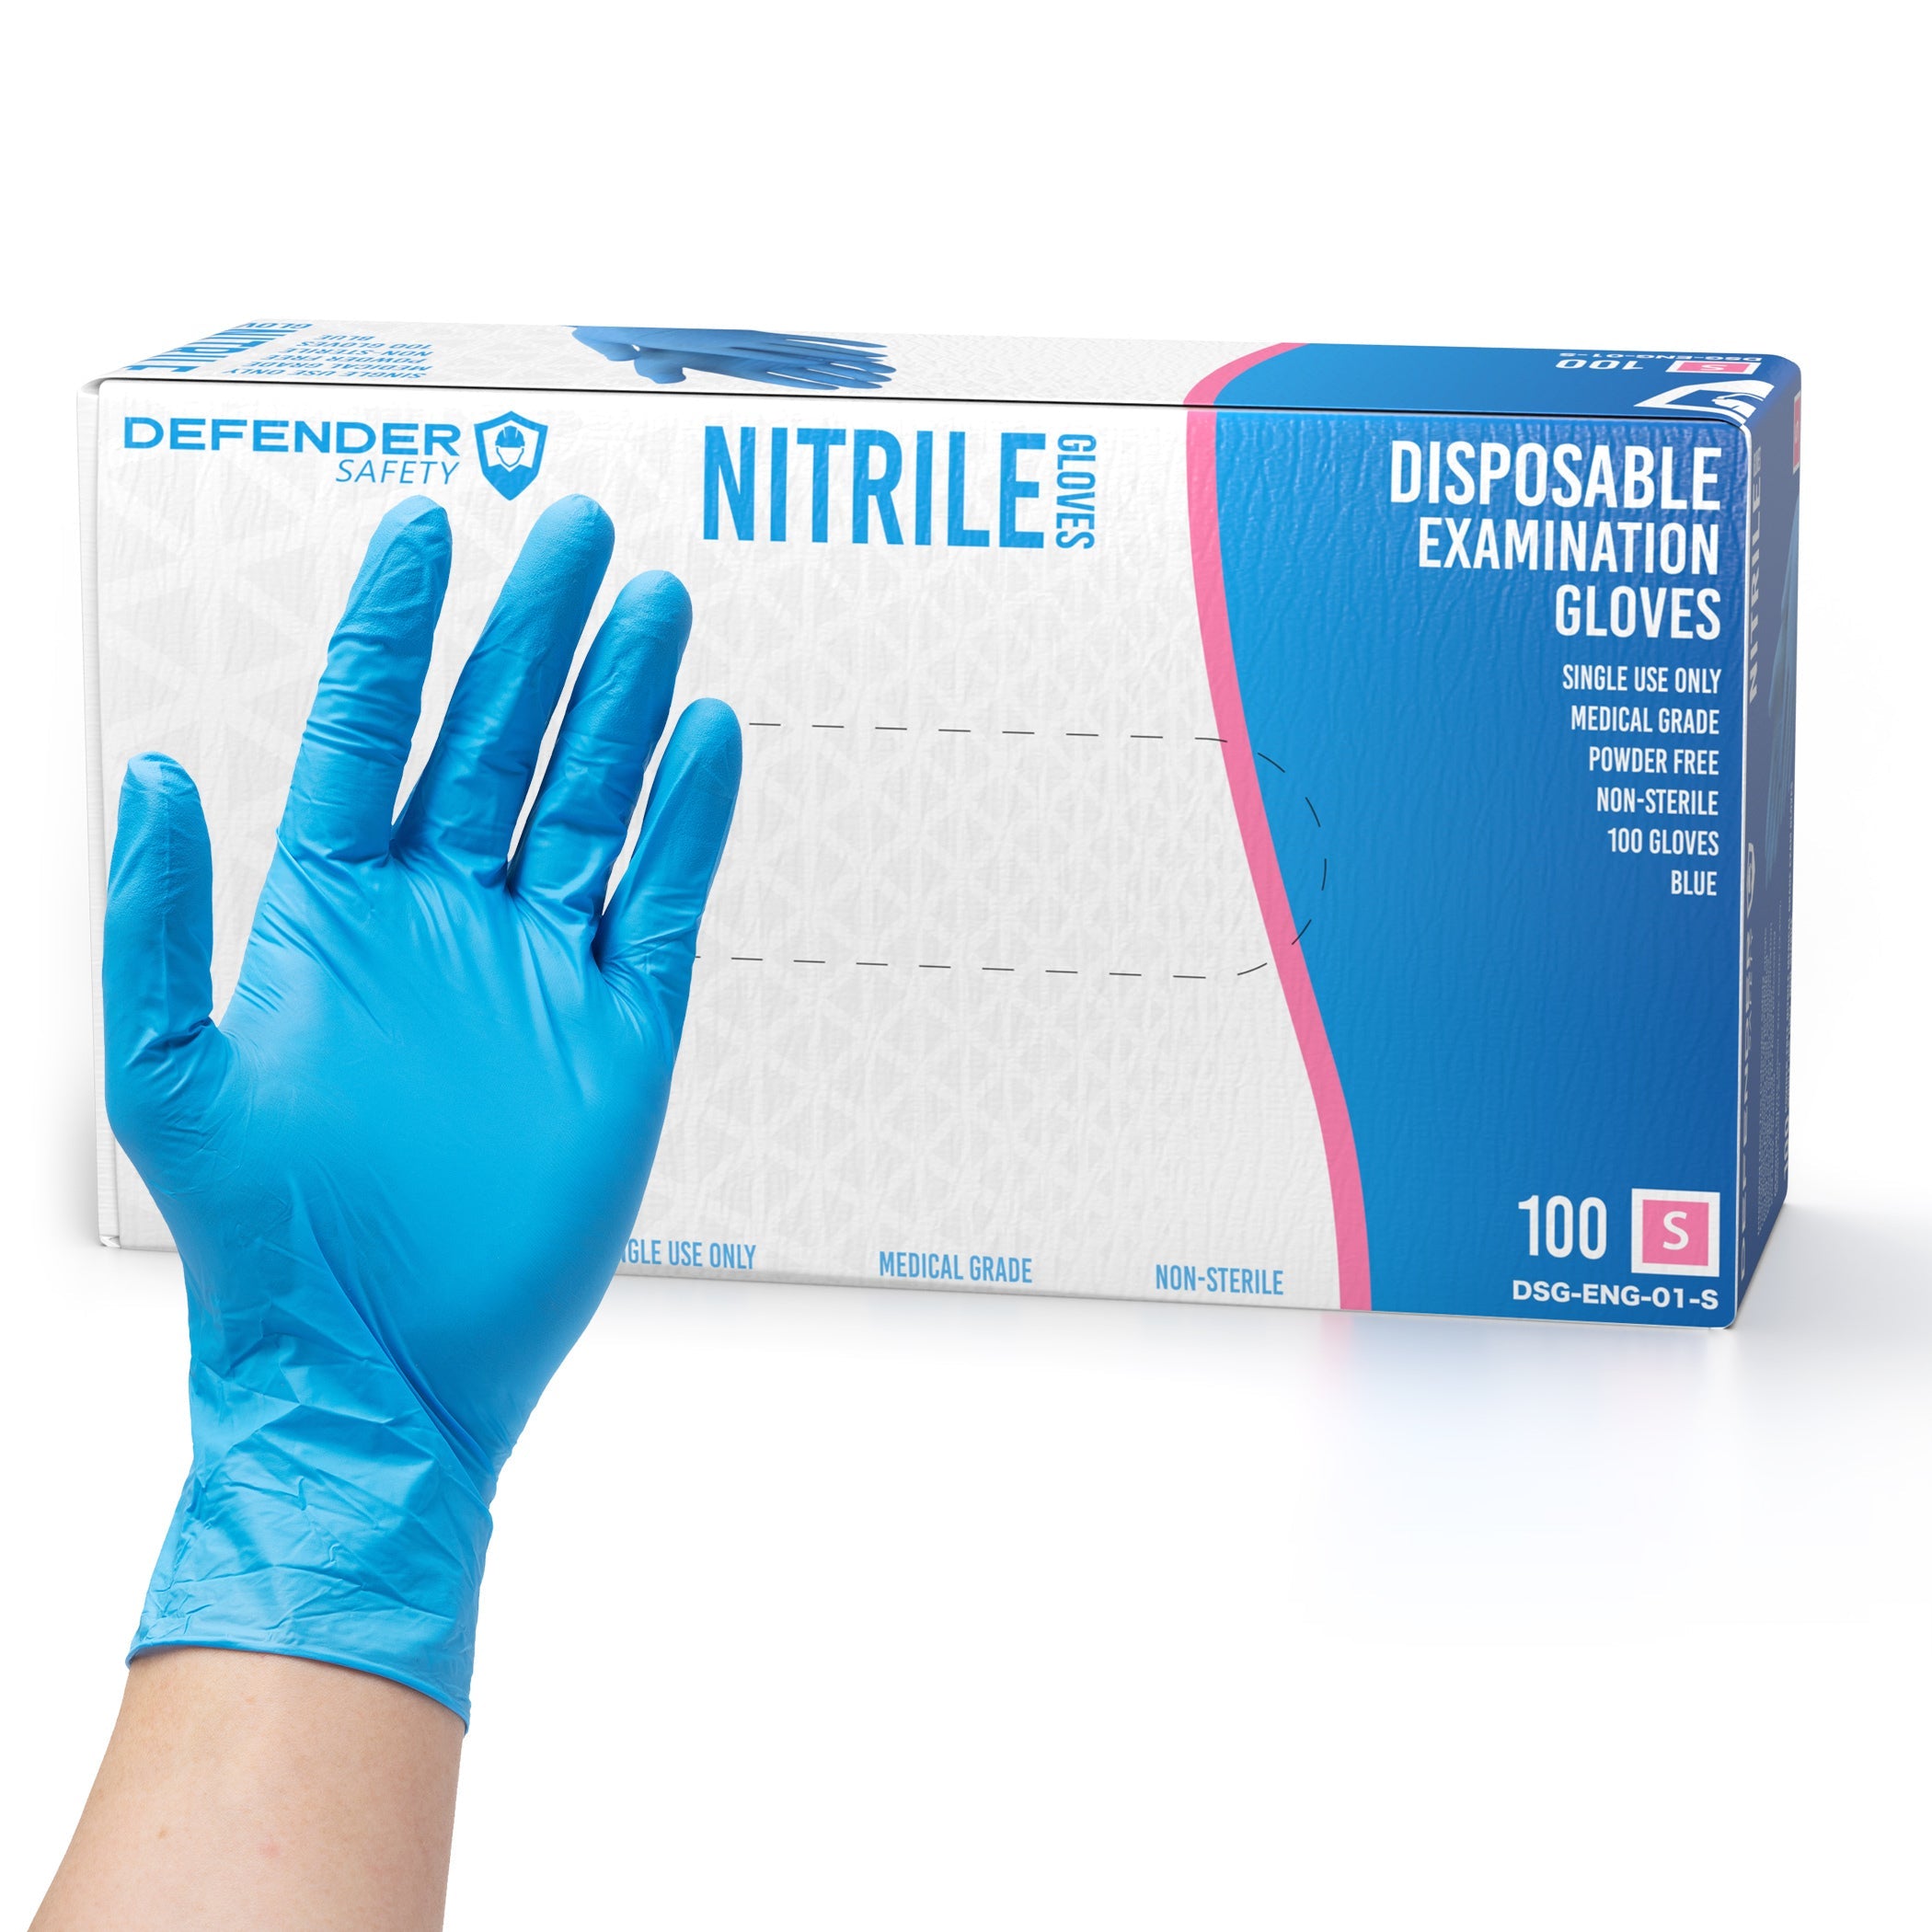 https://defendersafety.com/cdn/shop/products/35-mil-blue-nitrile-gloves-medical-grade-35-mil-powder-free-blue-352483.jpg?v=1690825028&width=2100